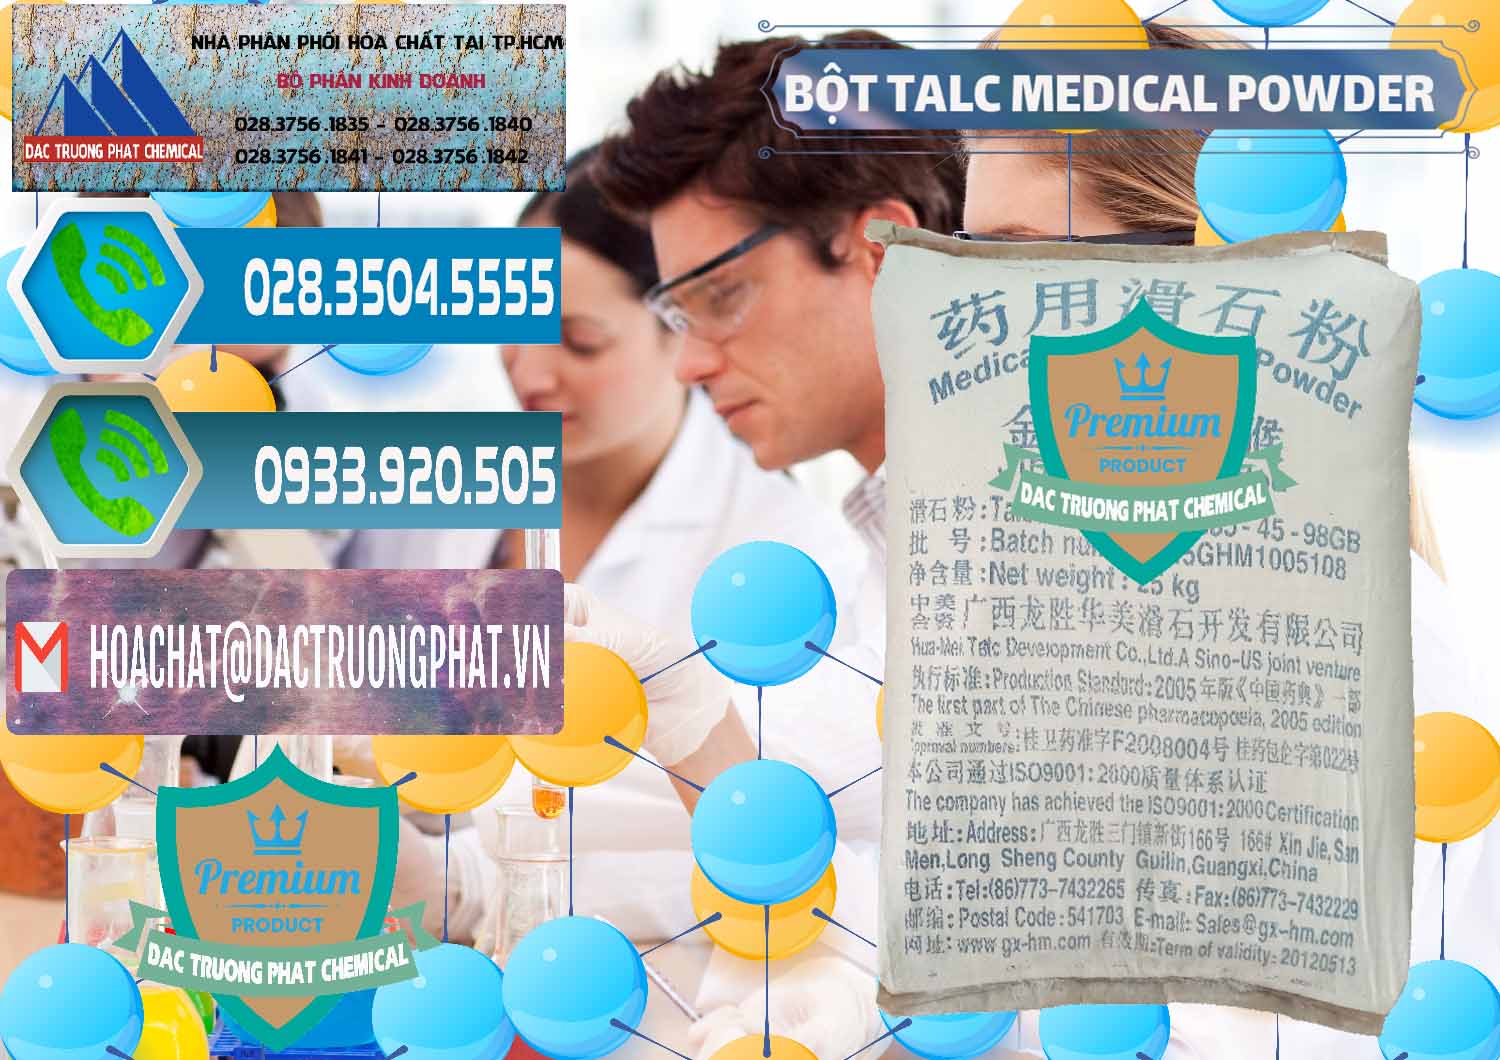 Nơi bán ( cung cấp ) Bột Talc Medical Powder Trung Quốc China - 0036 - Cty kinh doanh ( phân phối ) hóa chất tại TP.HCM - congtyhoachat.net